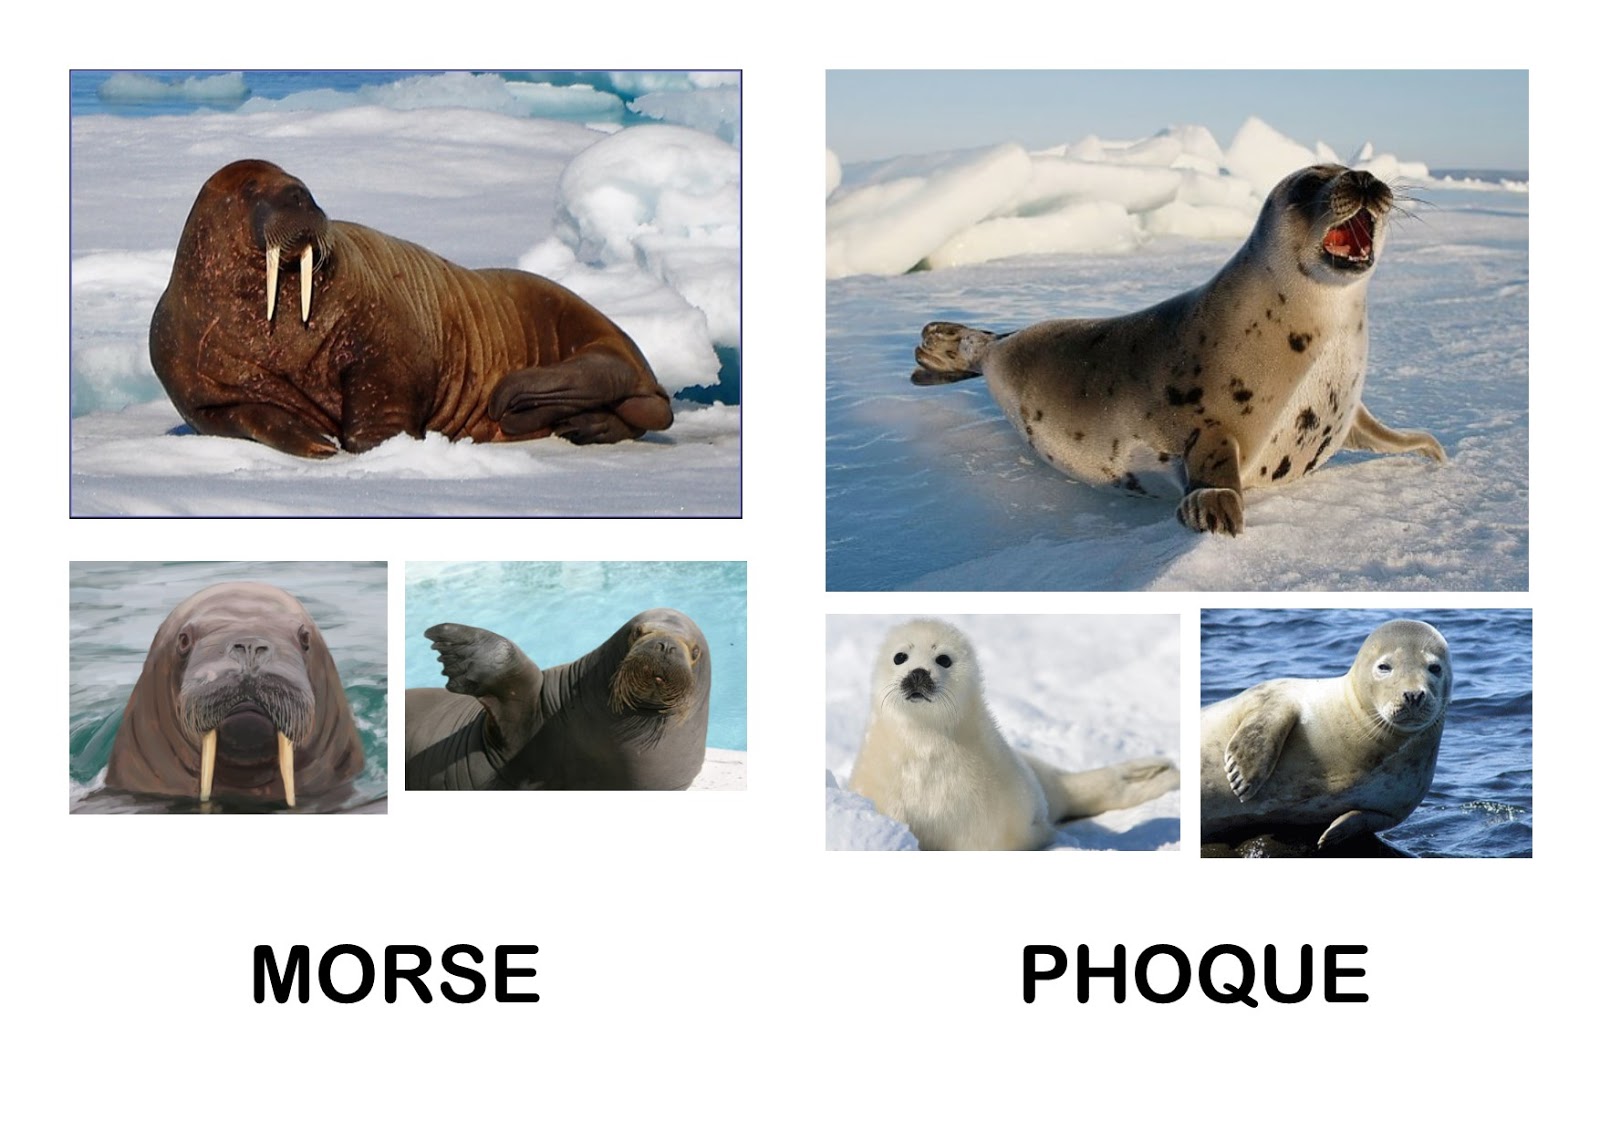 Imagier de la banquise et des animaux polaires - Imagier des